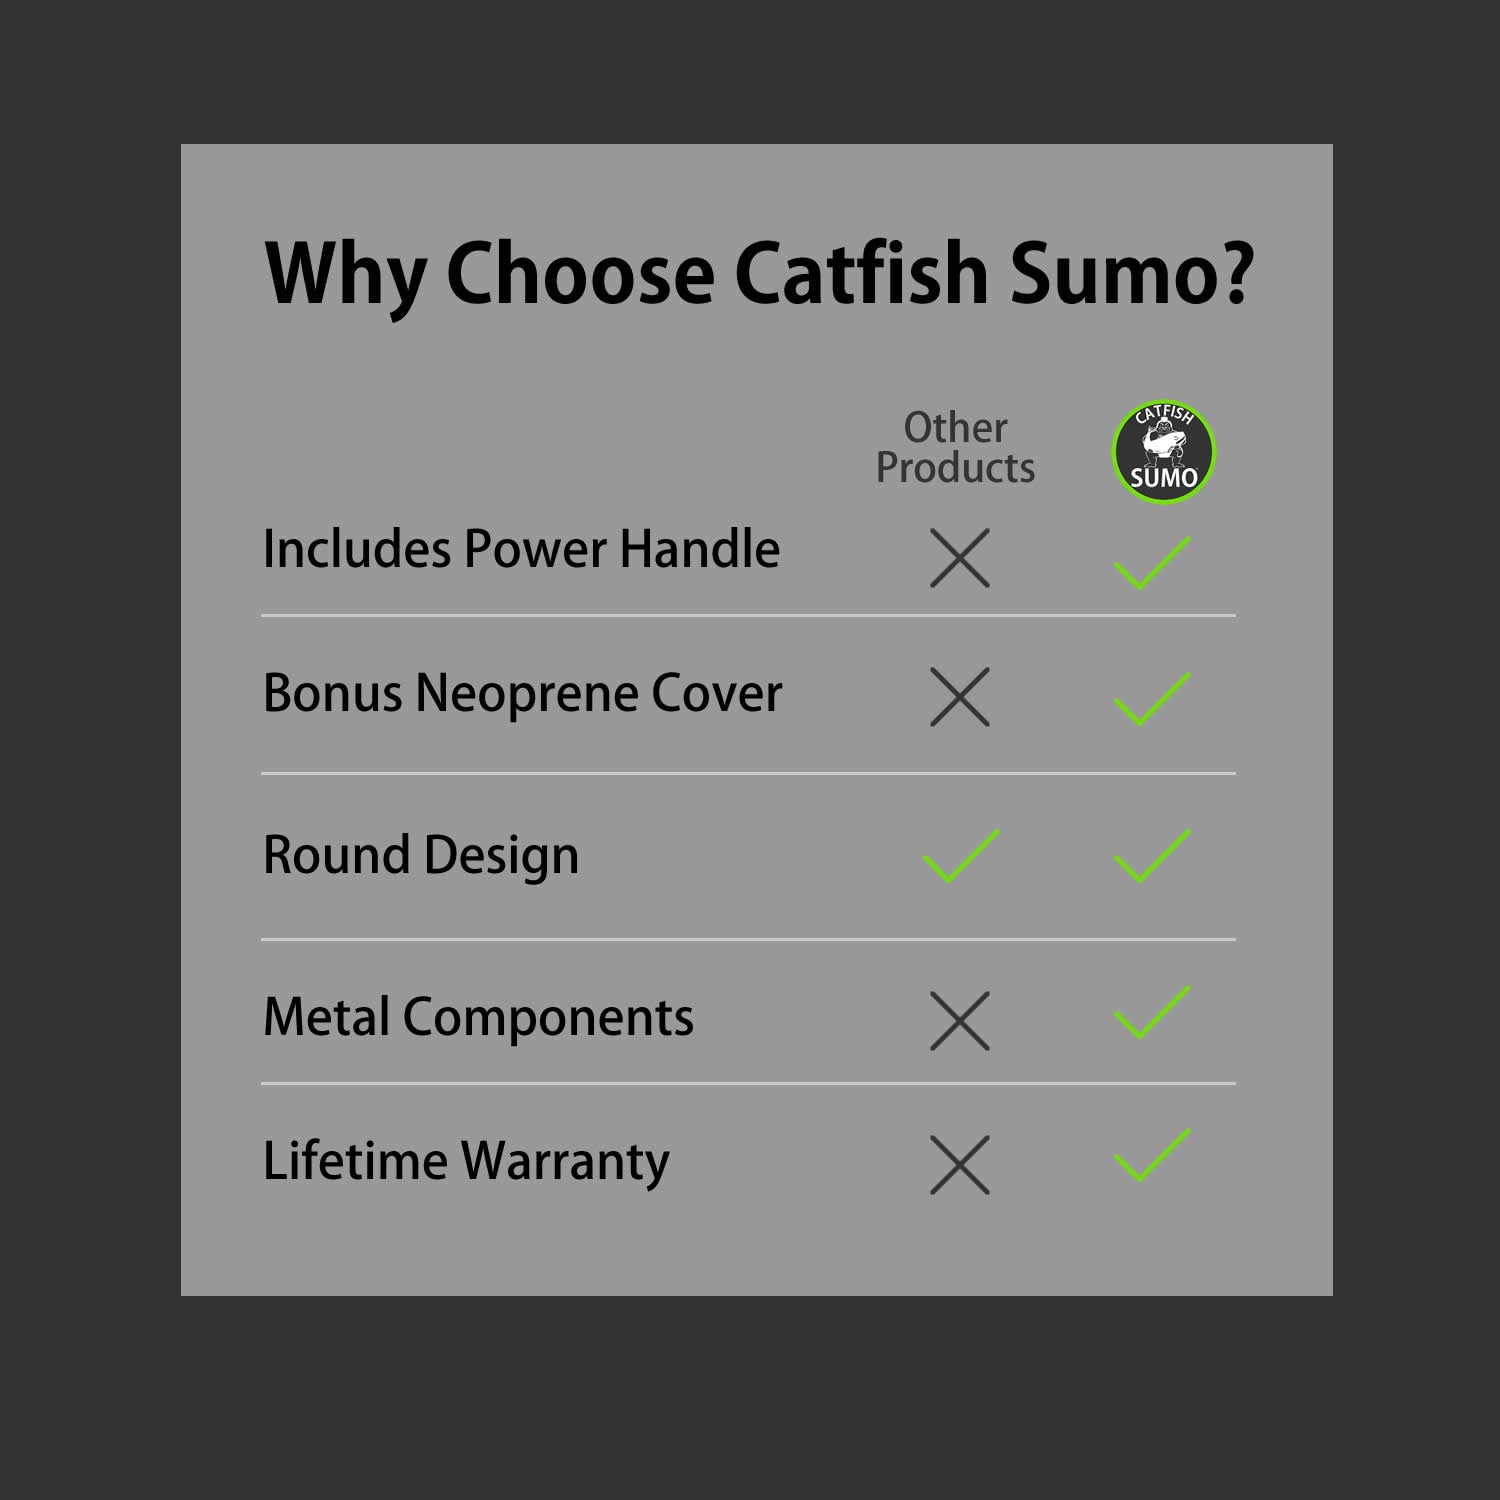 Catfish Sumo - Gears Brands